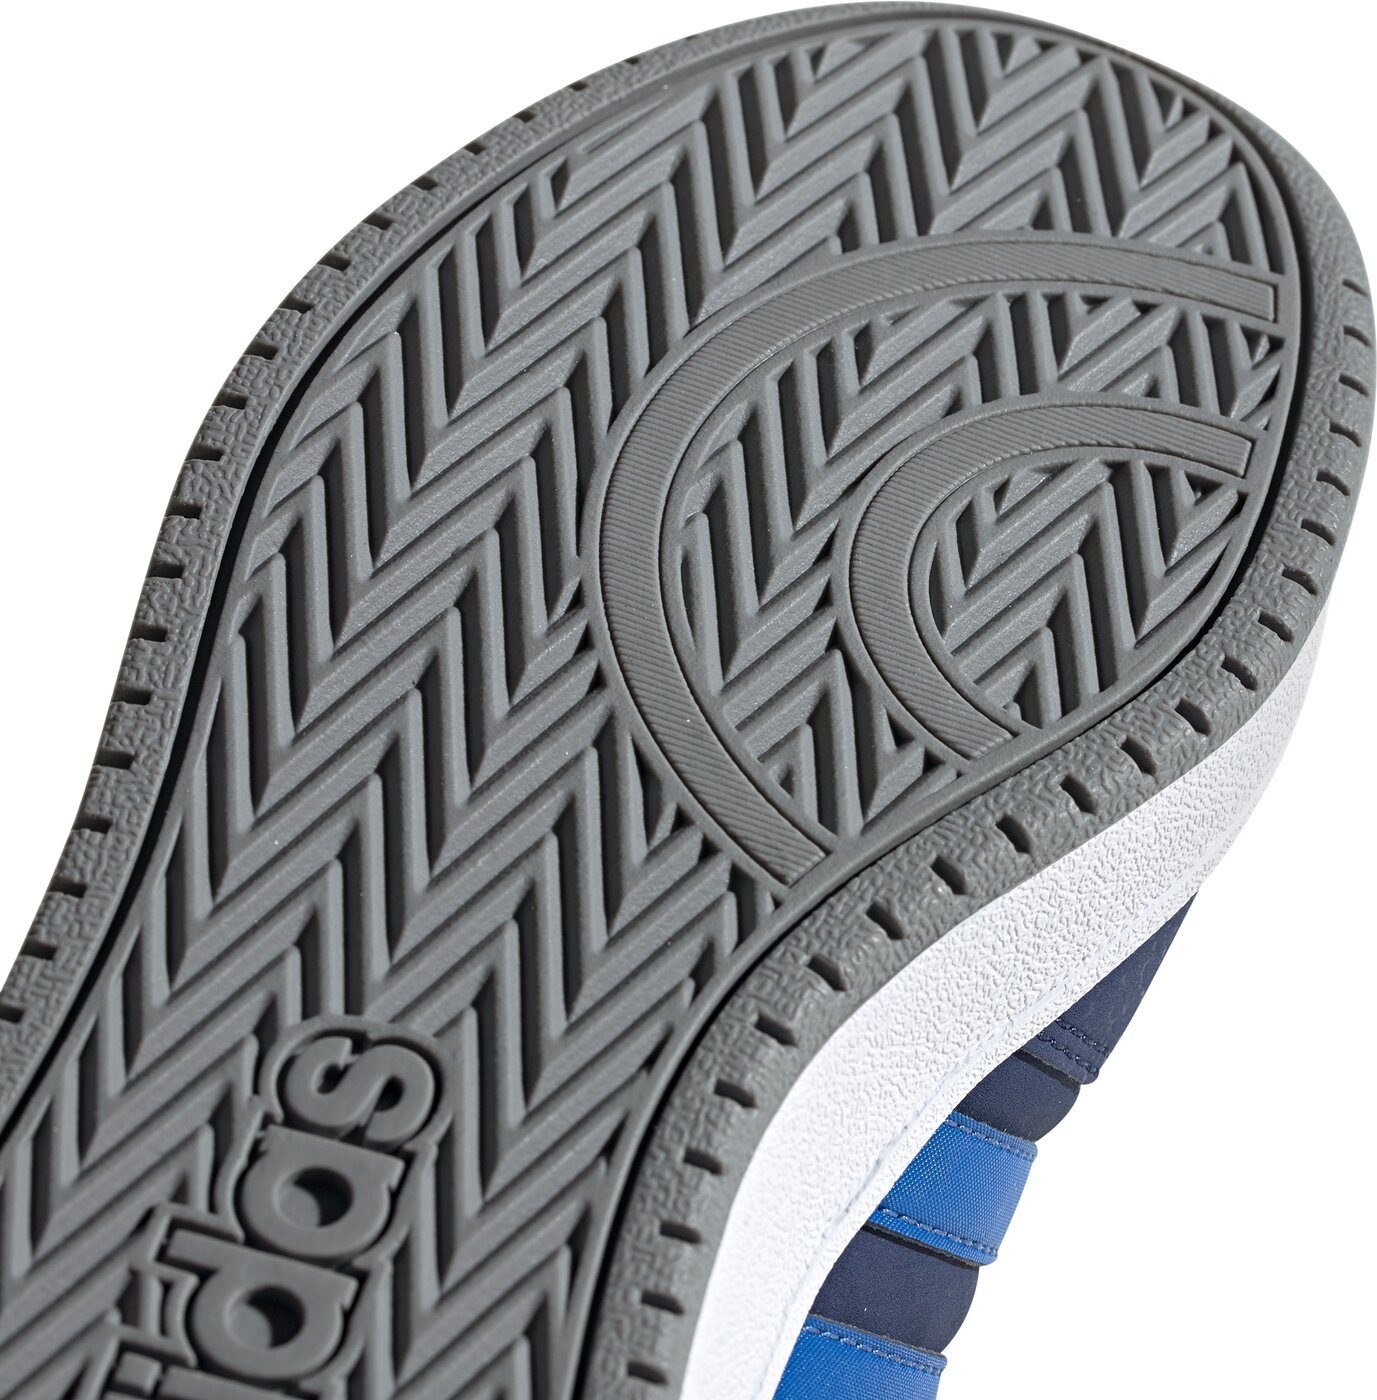 DKBLUE/BLUE/FTWWHT Basketballschuh HOOPS K Sportswear MID adidas 2.0